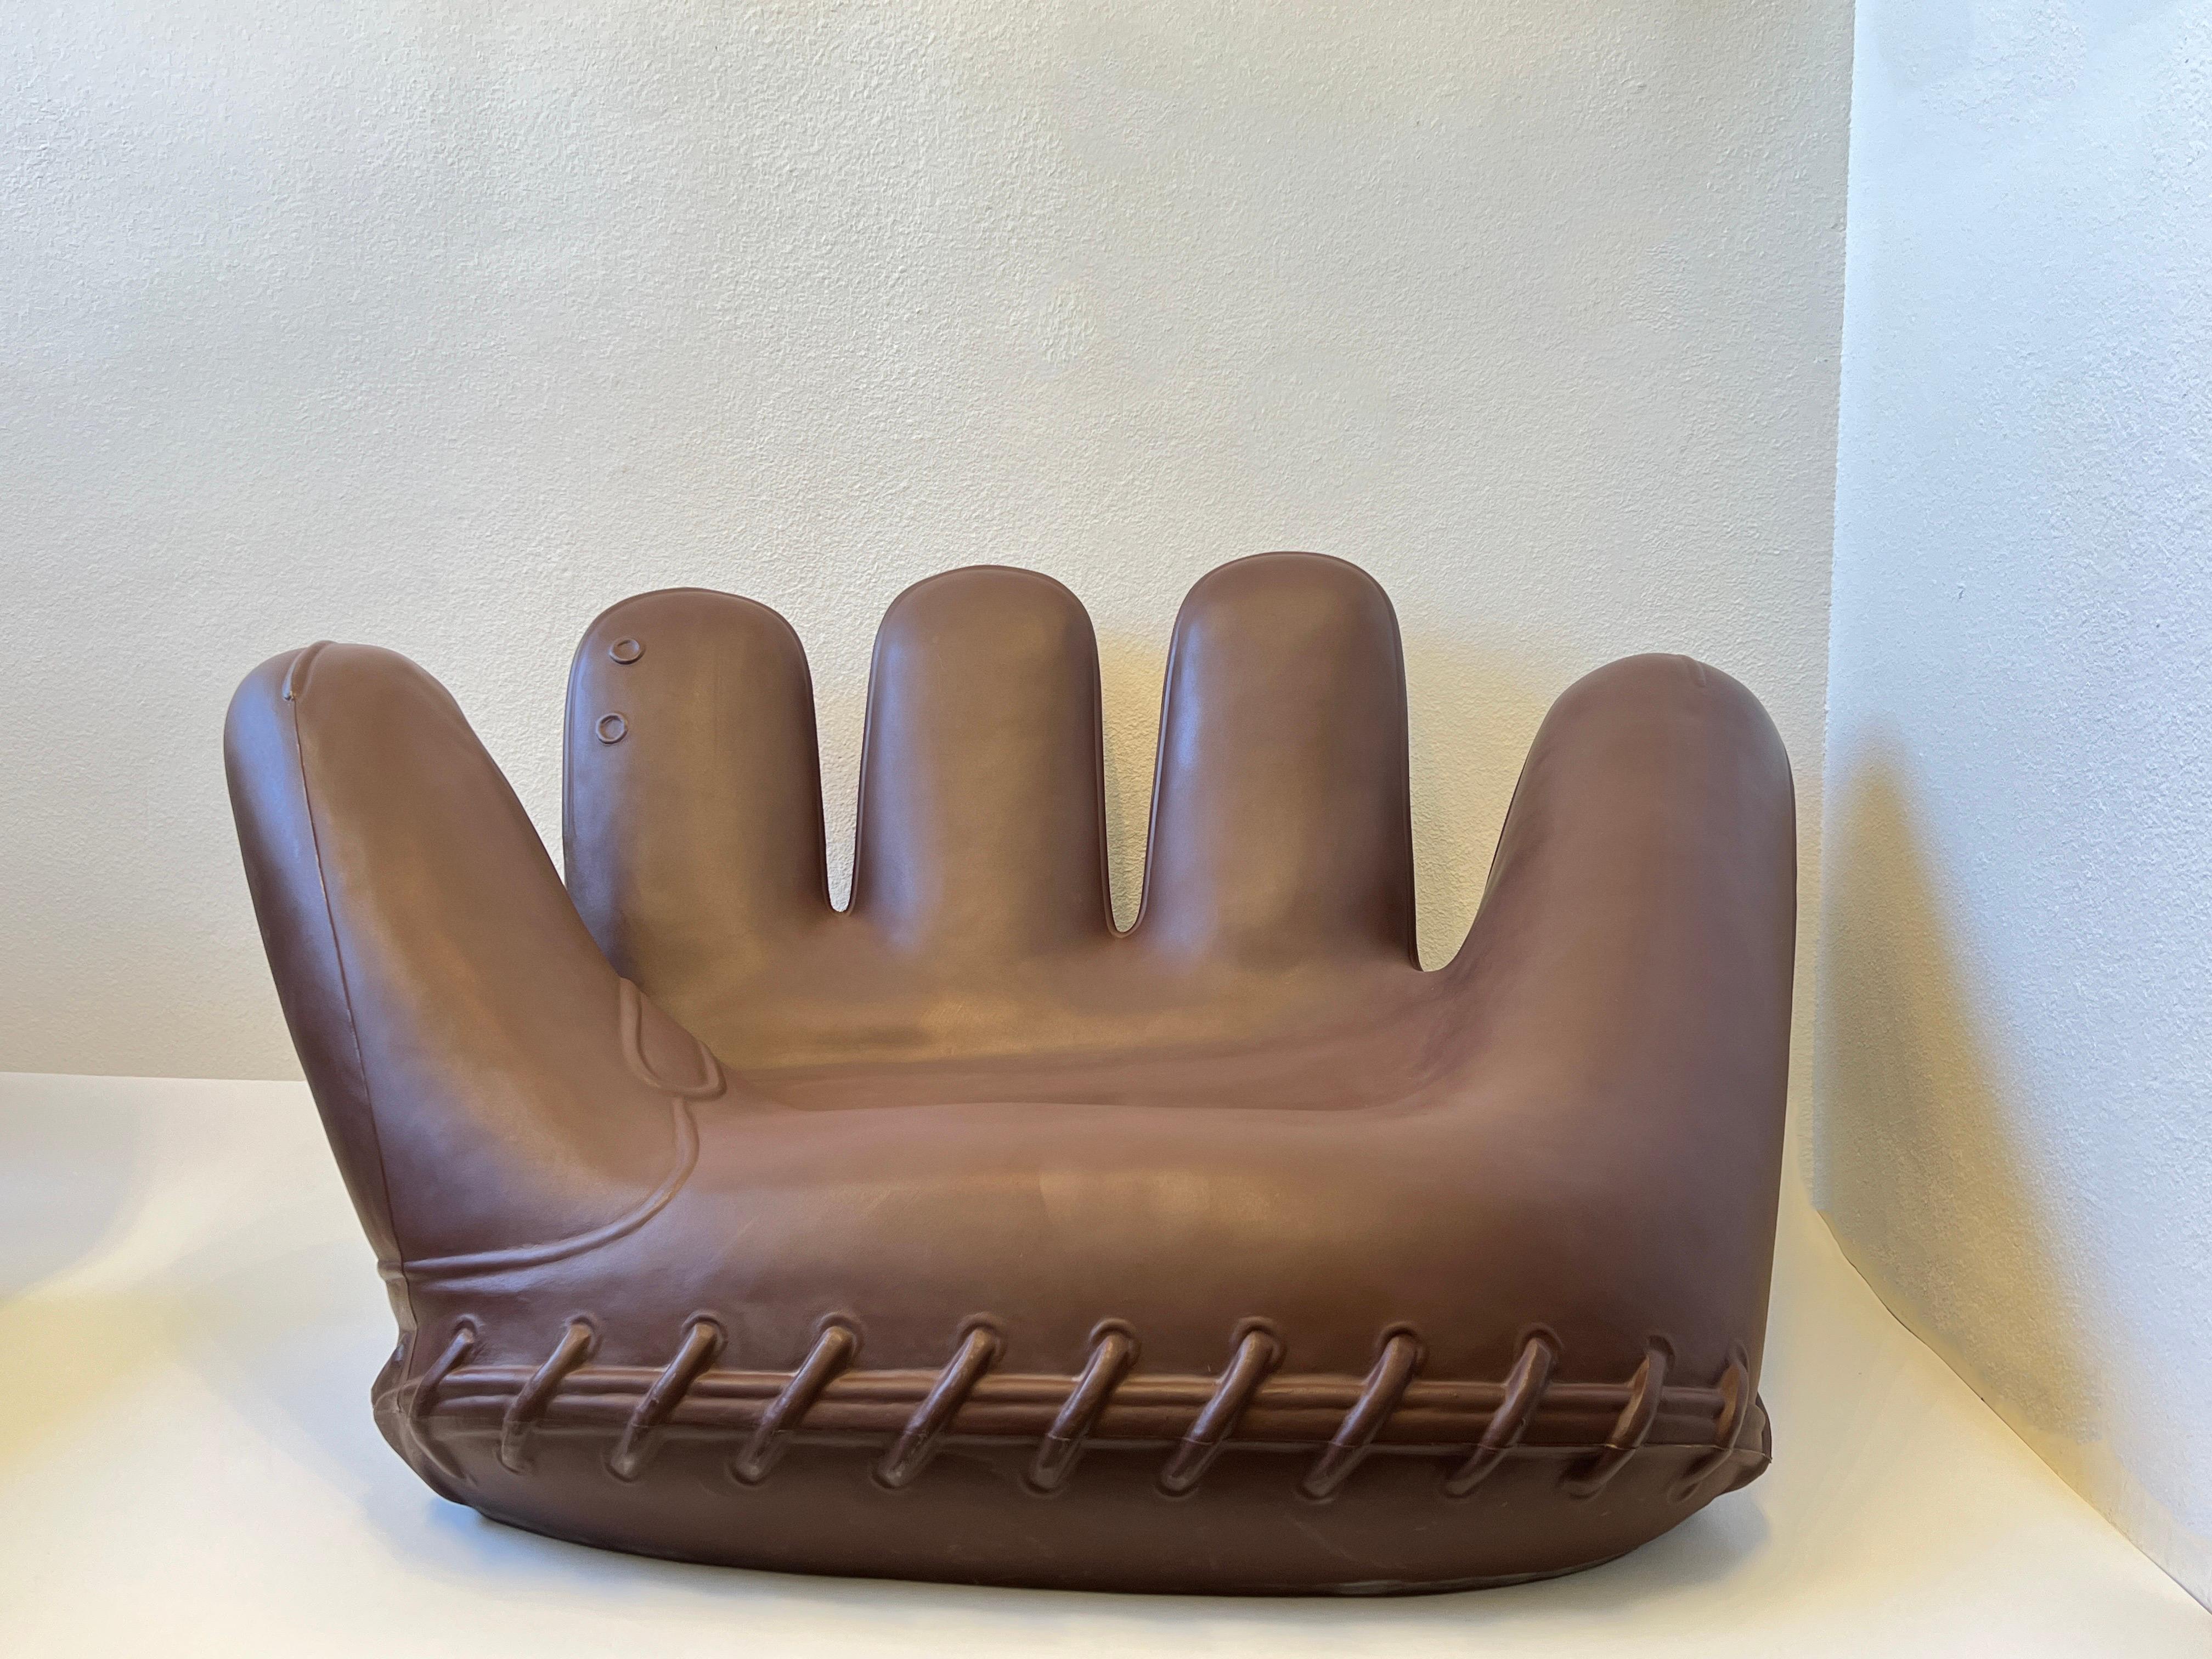 Joe Glove Stuhl aus braunem Kunststoff, entworfen von Gionathan de Pas, Donato D'Urbino und Paolo Lomazzi im Jahr 2003 für Heller. Design für draußen. 
Weist einige altersbedingte Gebrauchsspuren auf (siehe Detailfotos). 

Abmessungen: 64